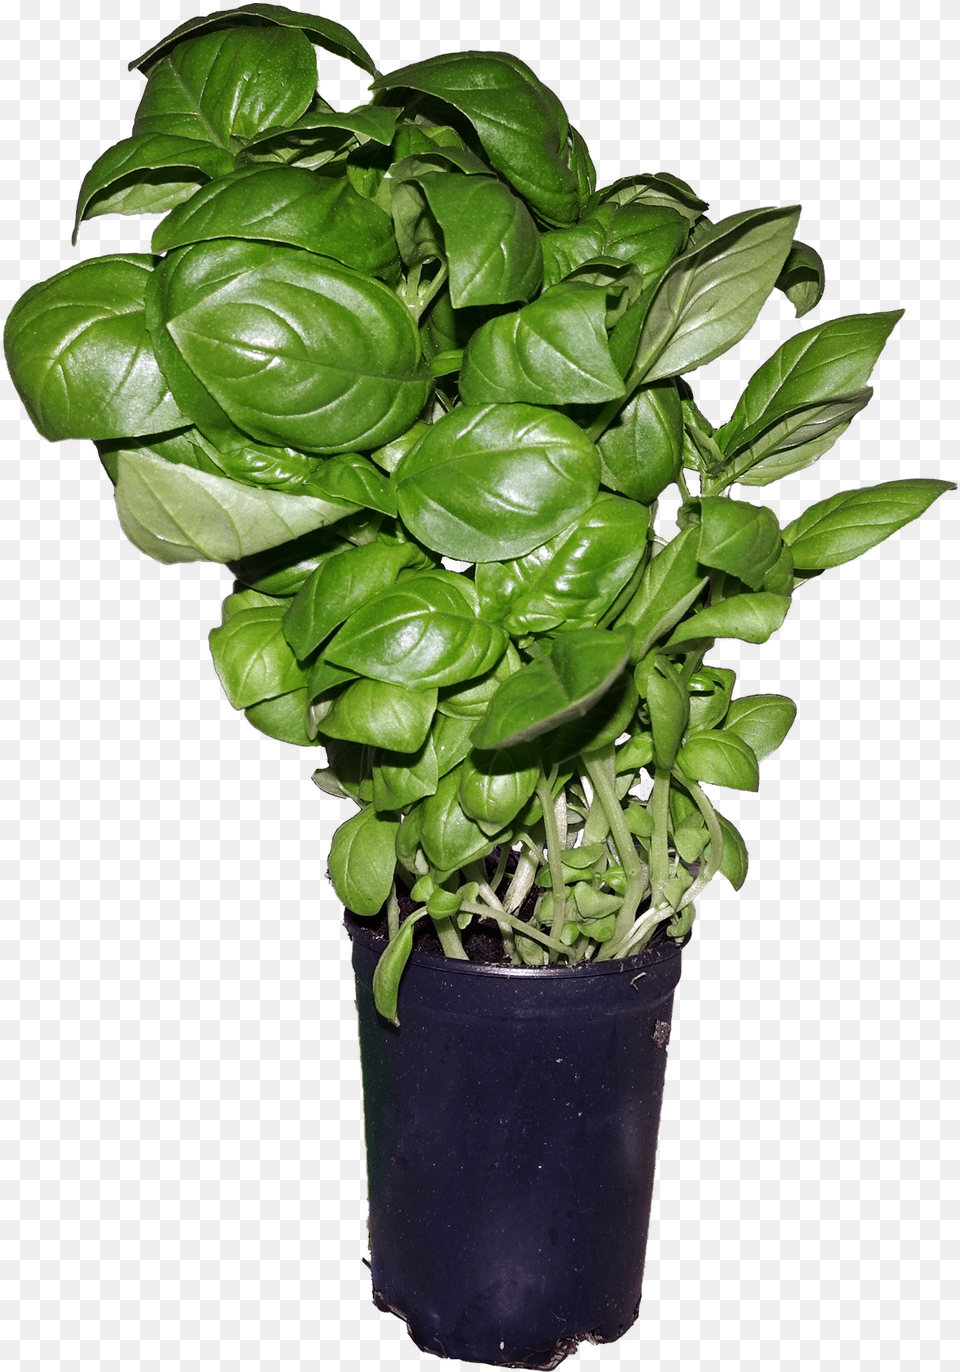 Ymele Basil Flowerpot, Leaf, Plant, Food, Leafy Green Vegetable Png Image